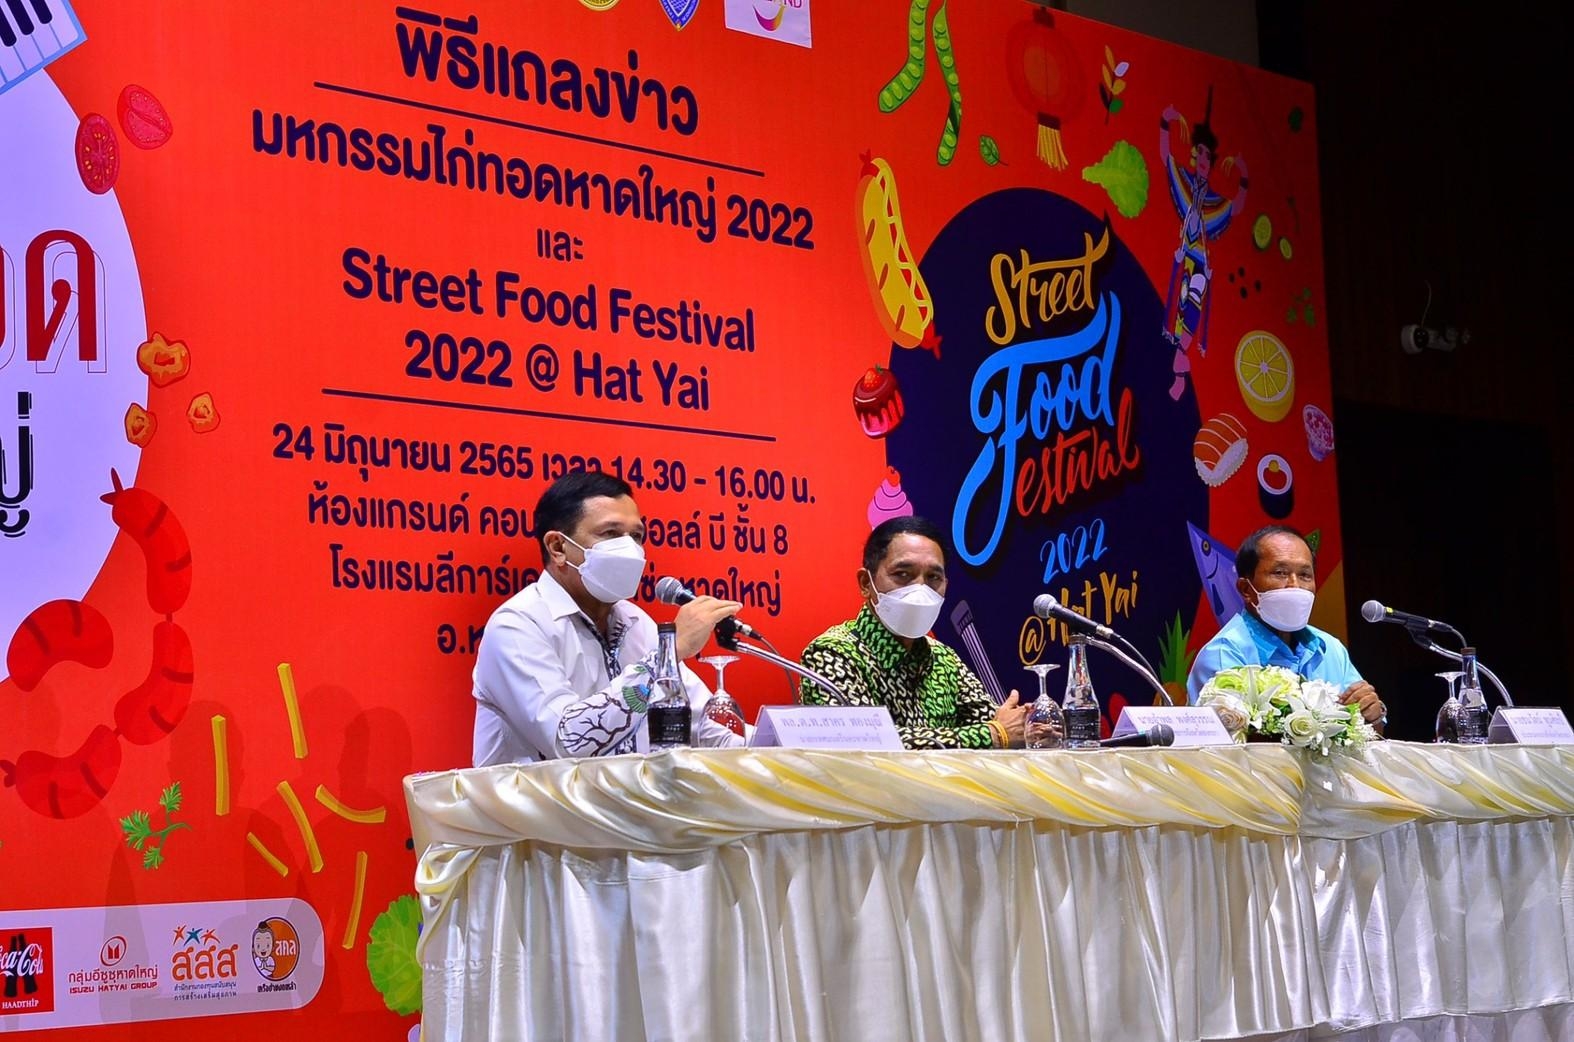 หอการค้าจังหวัดสงขลา ร่วมกับ เทศบาลนครหาดใหญ่ และ สำนักงานการท่องเที่ยวและกีฬาจังหวัดสงขลา จัดงานแถลงข่าว “มหกรรมไก่ทอดหาดใหญ่ 2022 และงาน Street Food Festival 2022@Hatyai ”